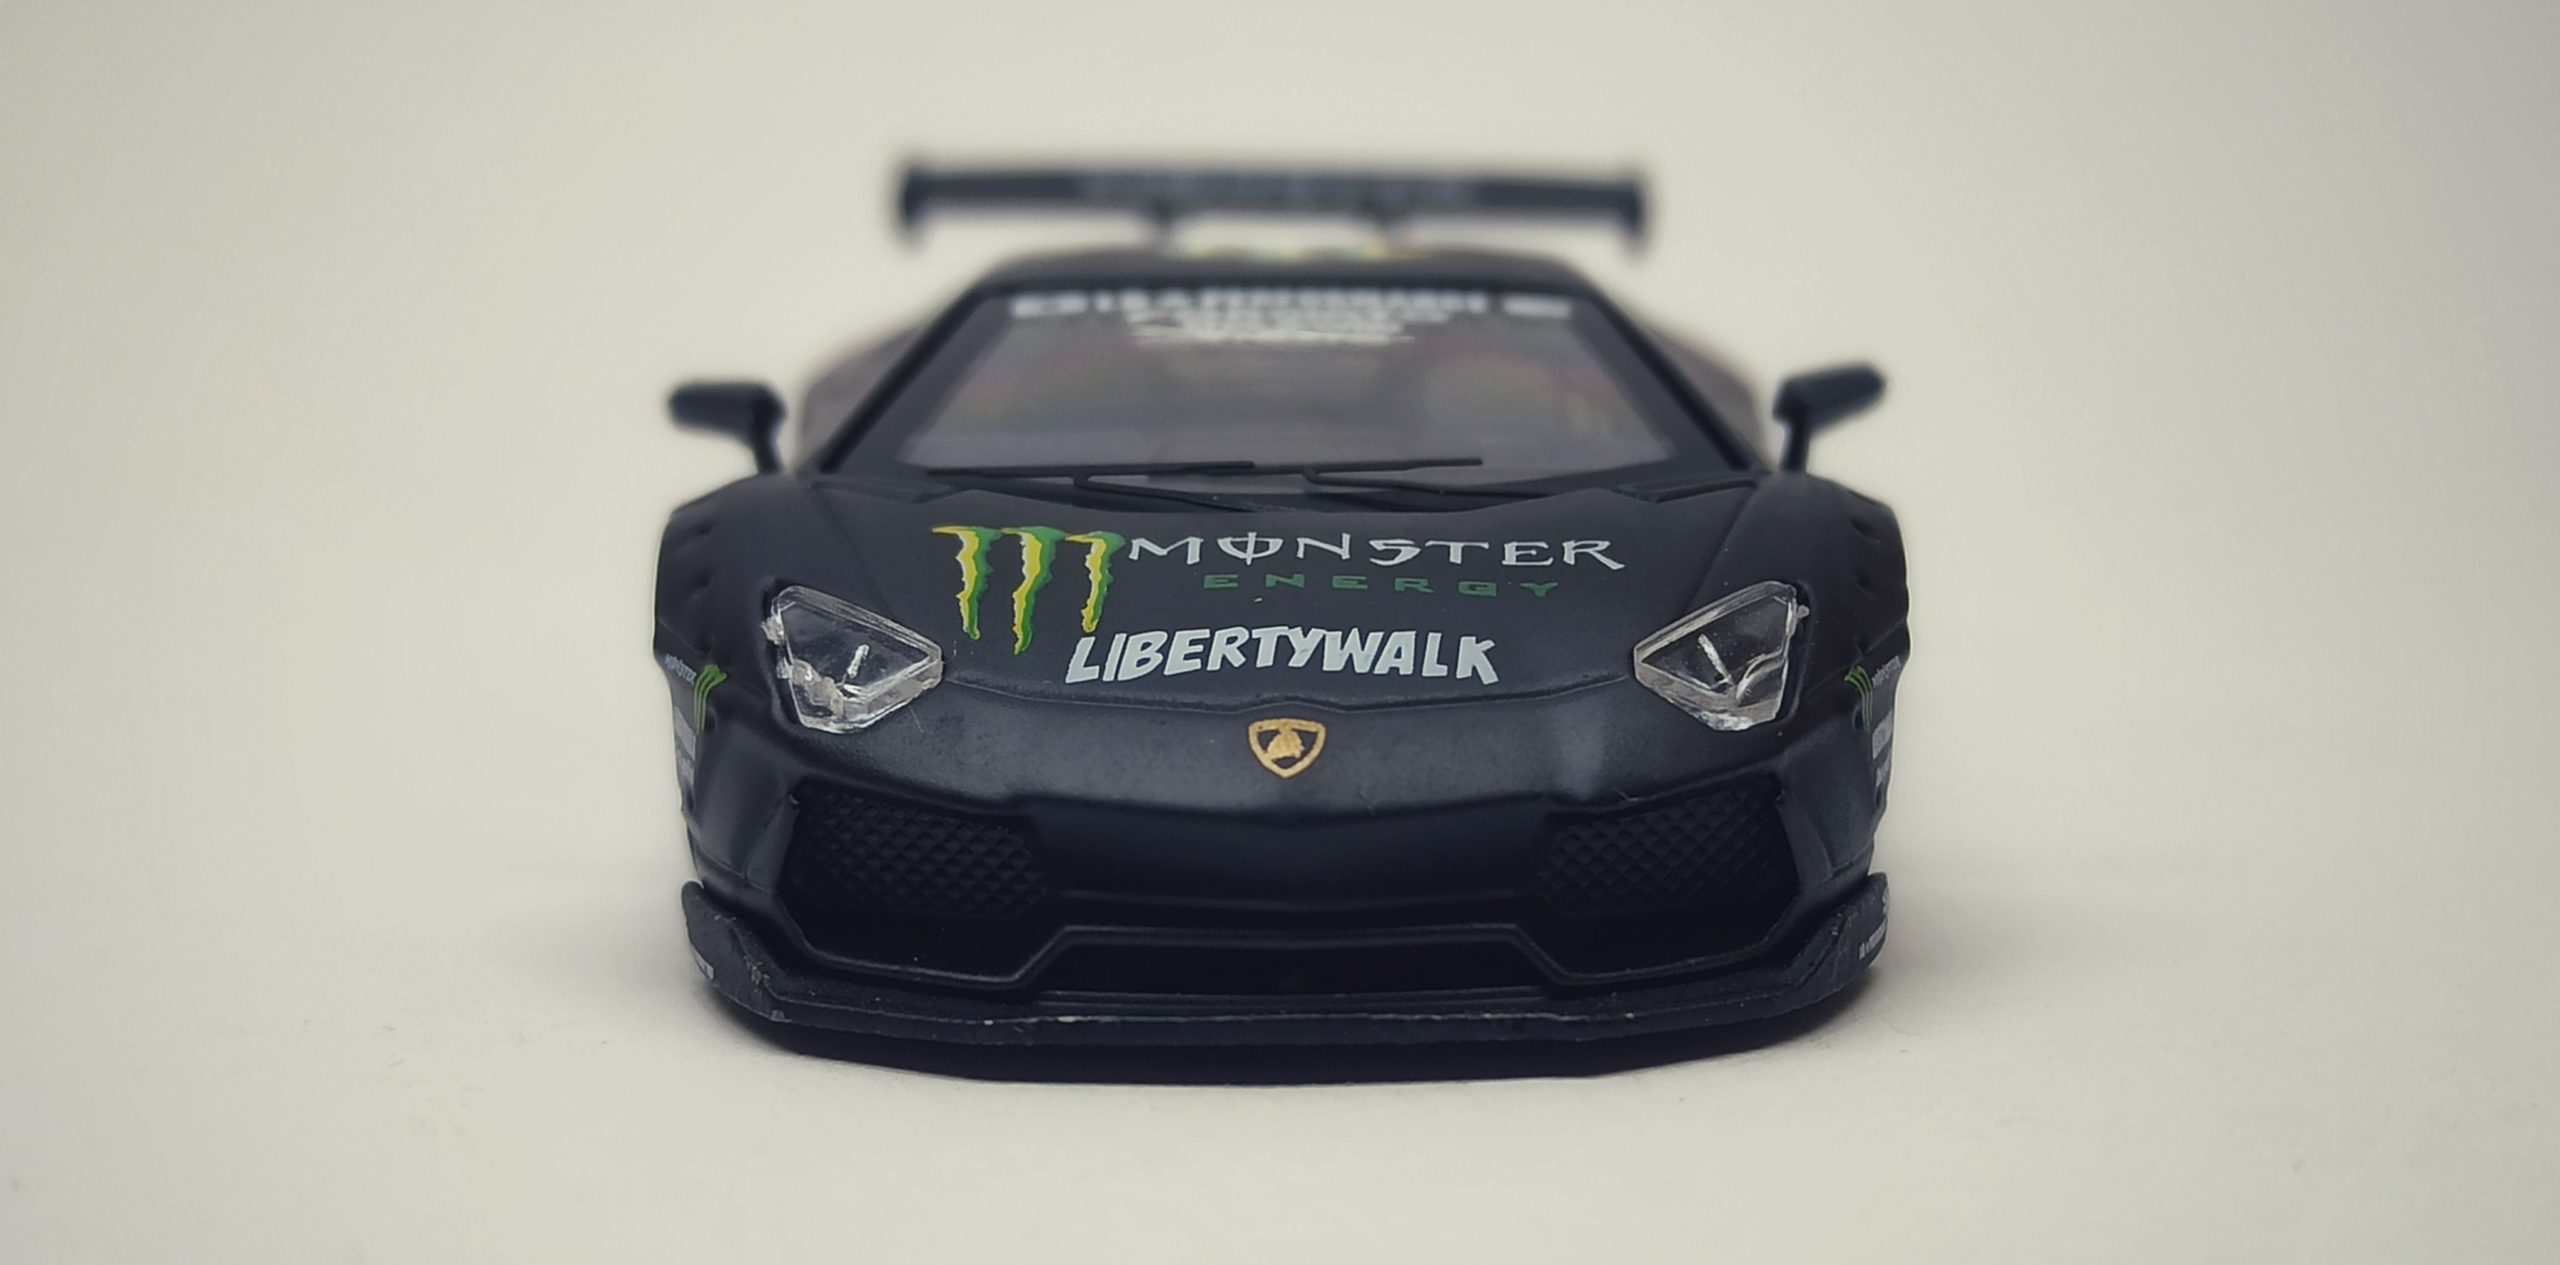 Time Model Lamborghini Aventador LP 700-4 2019 LB Performance Liberty Walk black (Monster Energy)